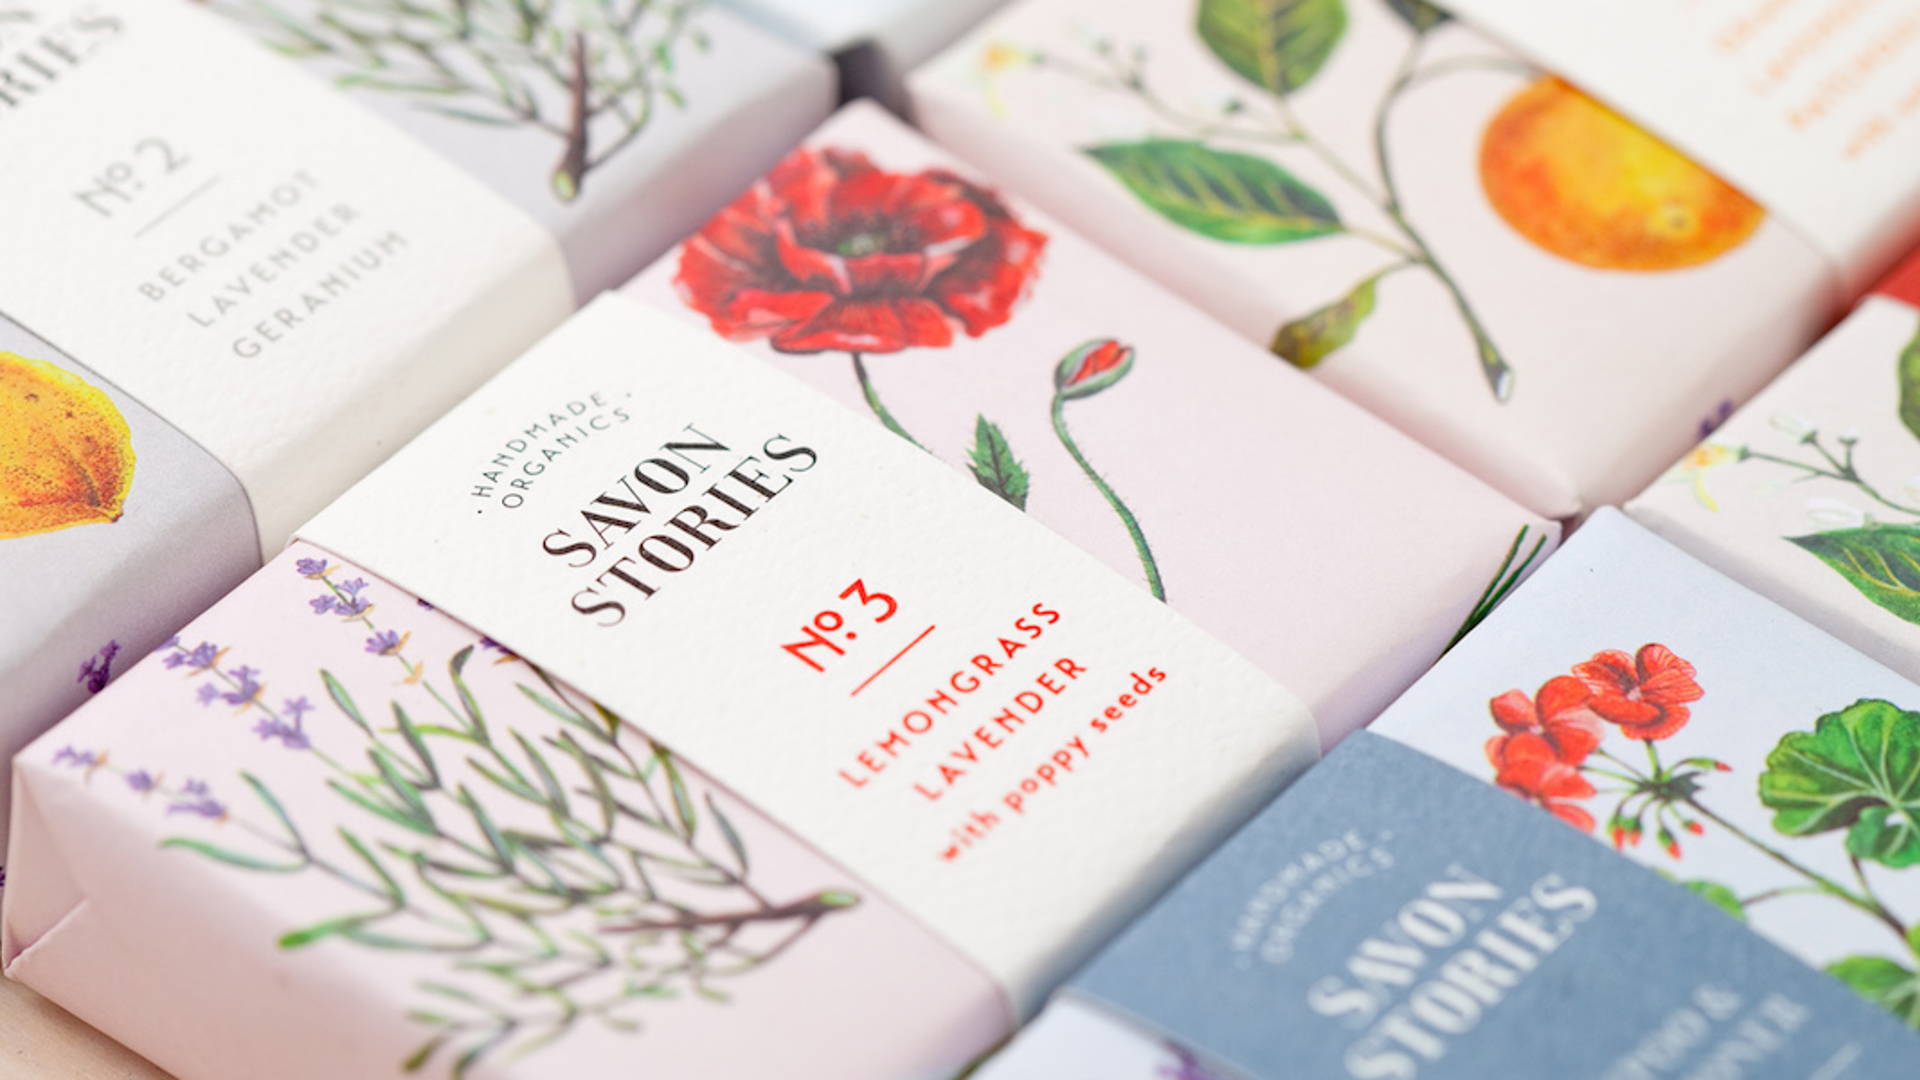 Savon Stories | Dieline - Design, Branding & Packaging Inspiration